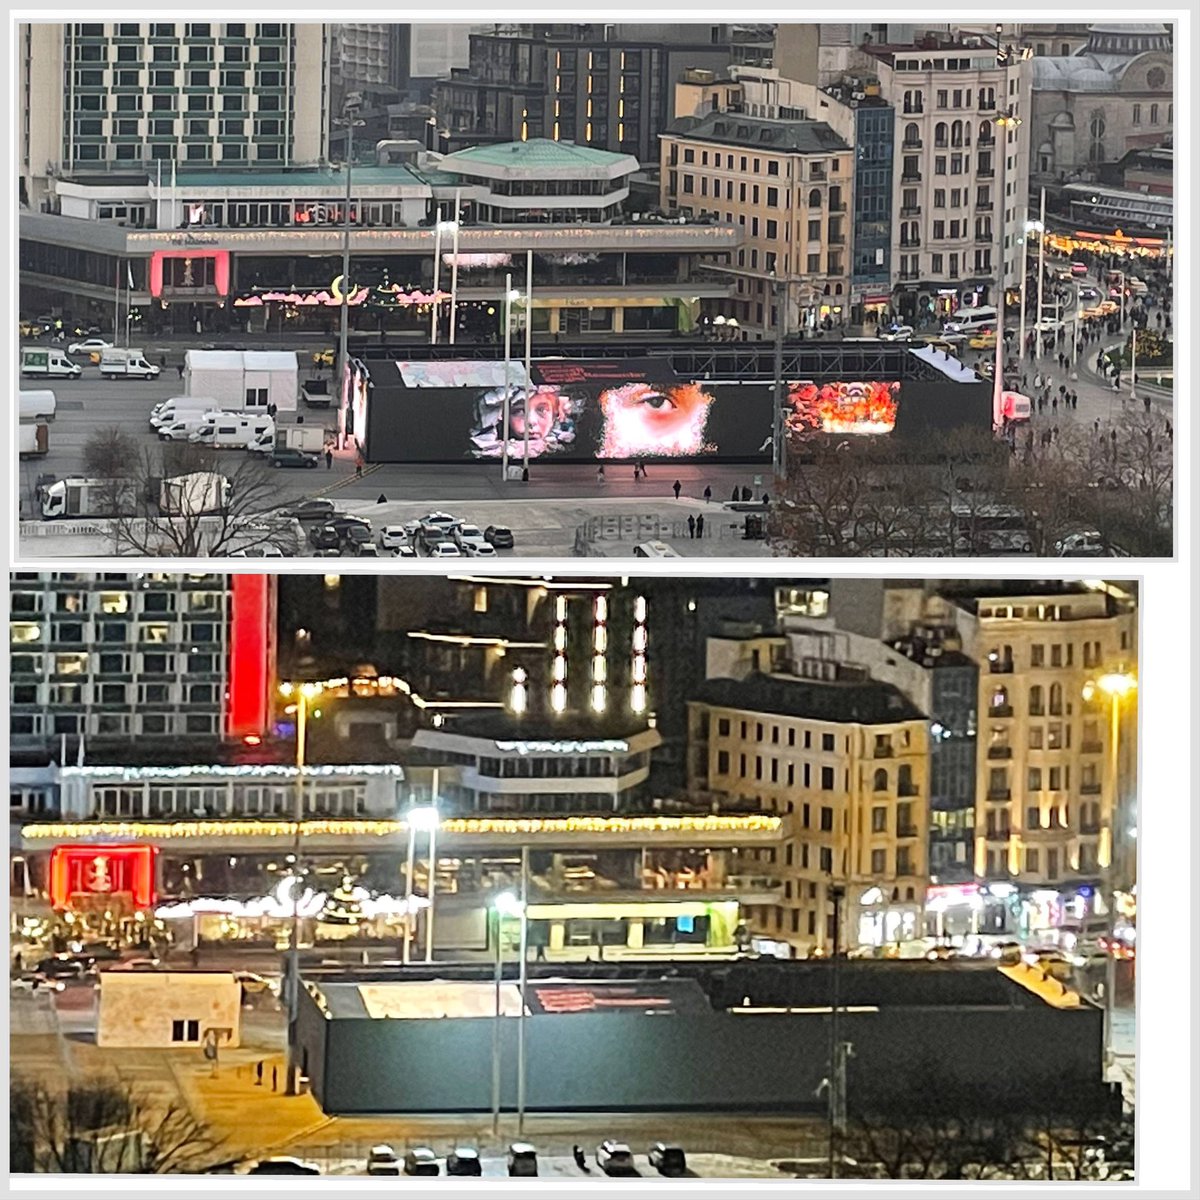 Suudi arabistan’da Türk milletine yapılan hakaretlerden sonra Taksim meydanındaki yapay zeka ile oluşturulmuş dev ekran gazze propagandaları gelen tepkiler üzerine kapatıldı.